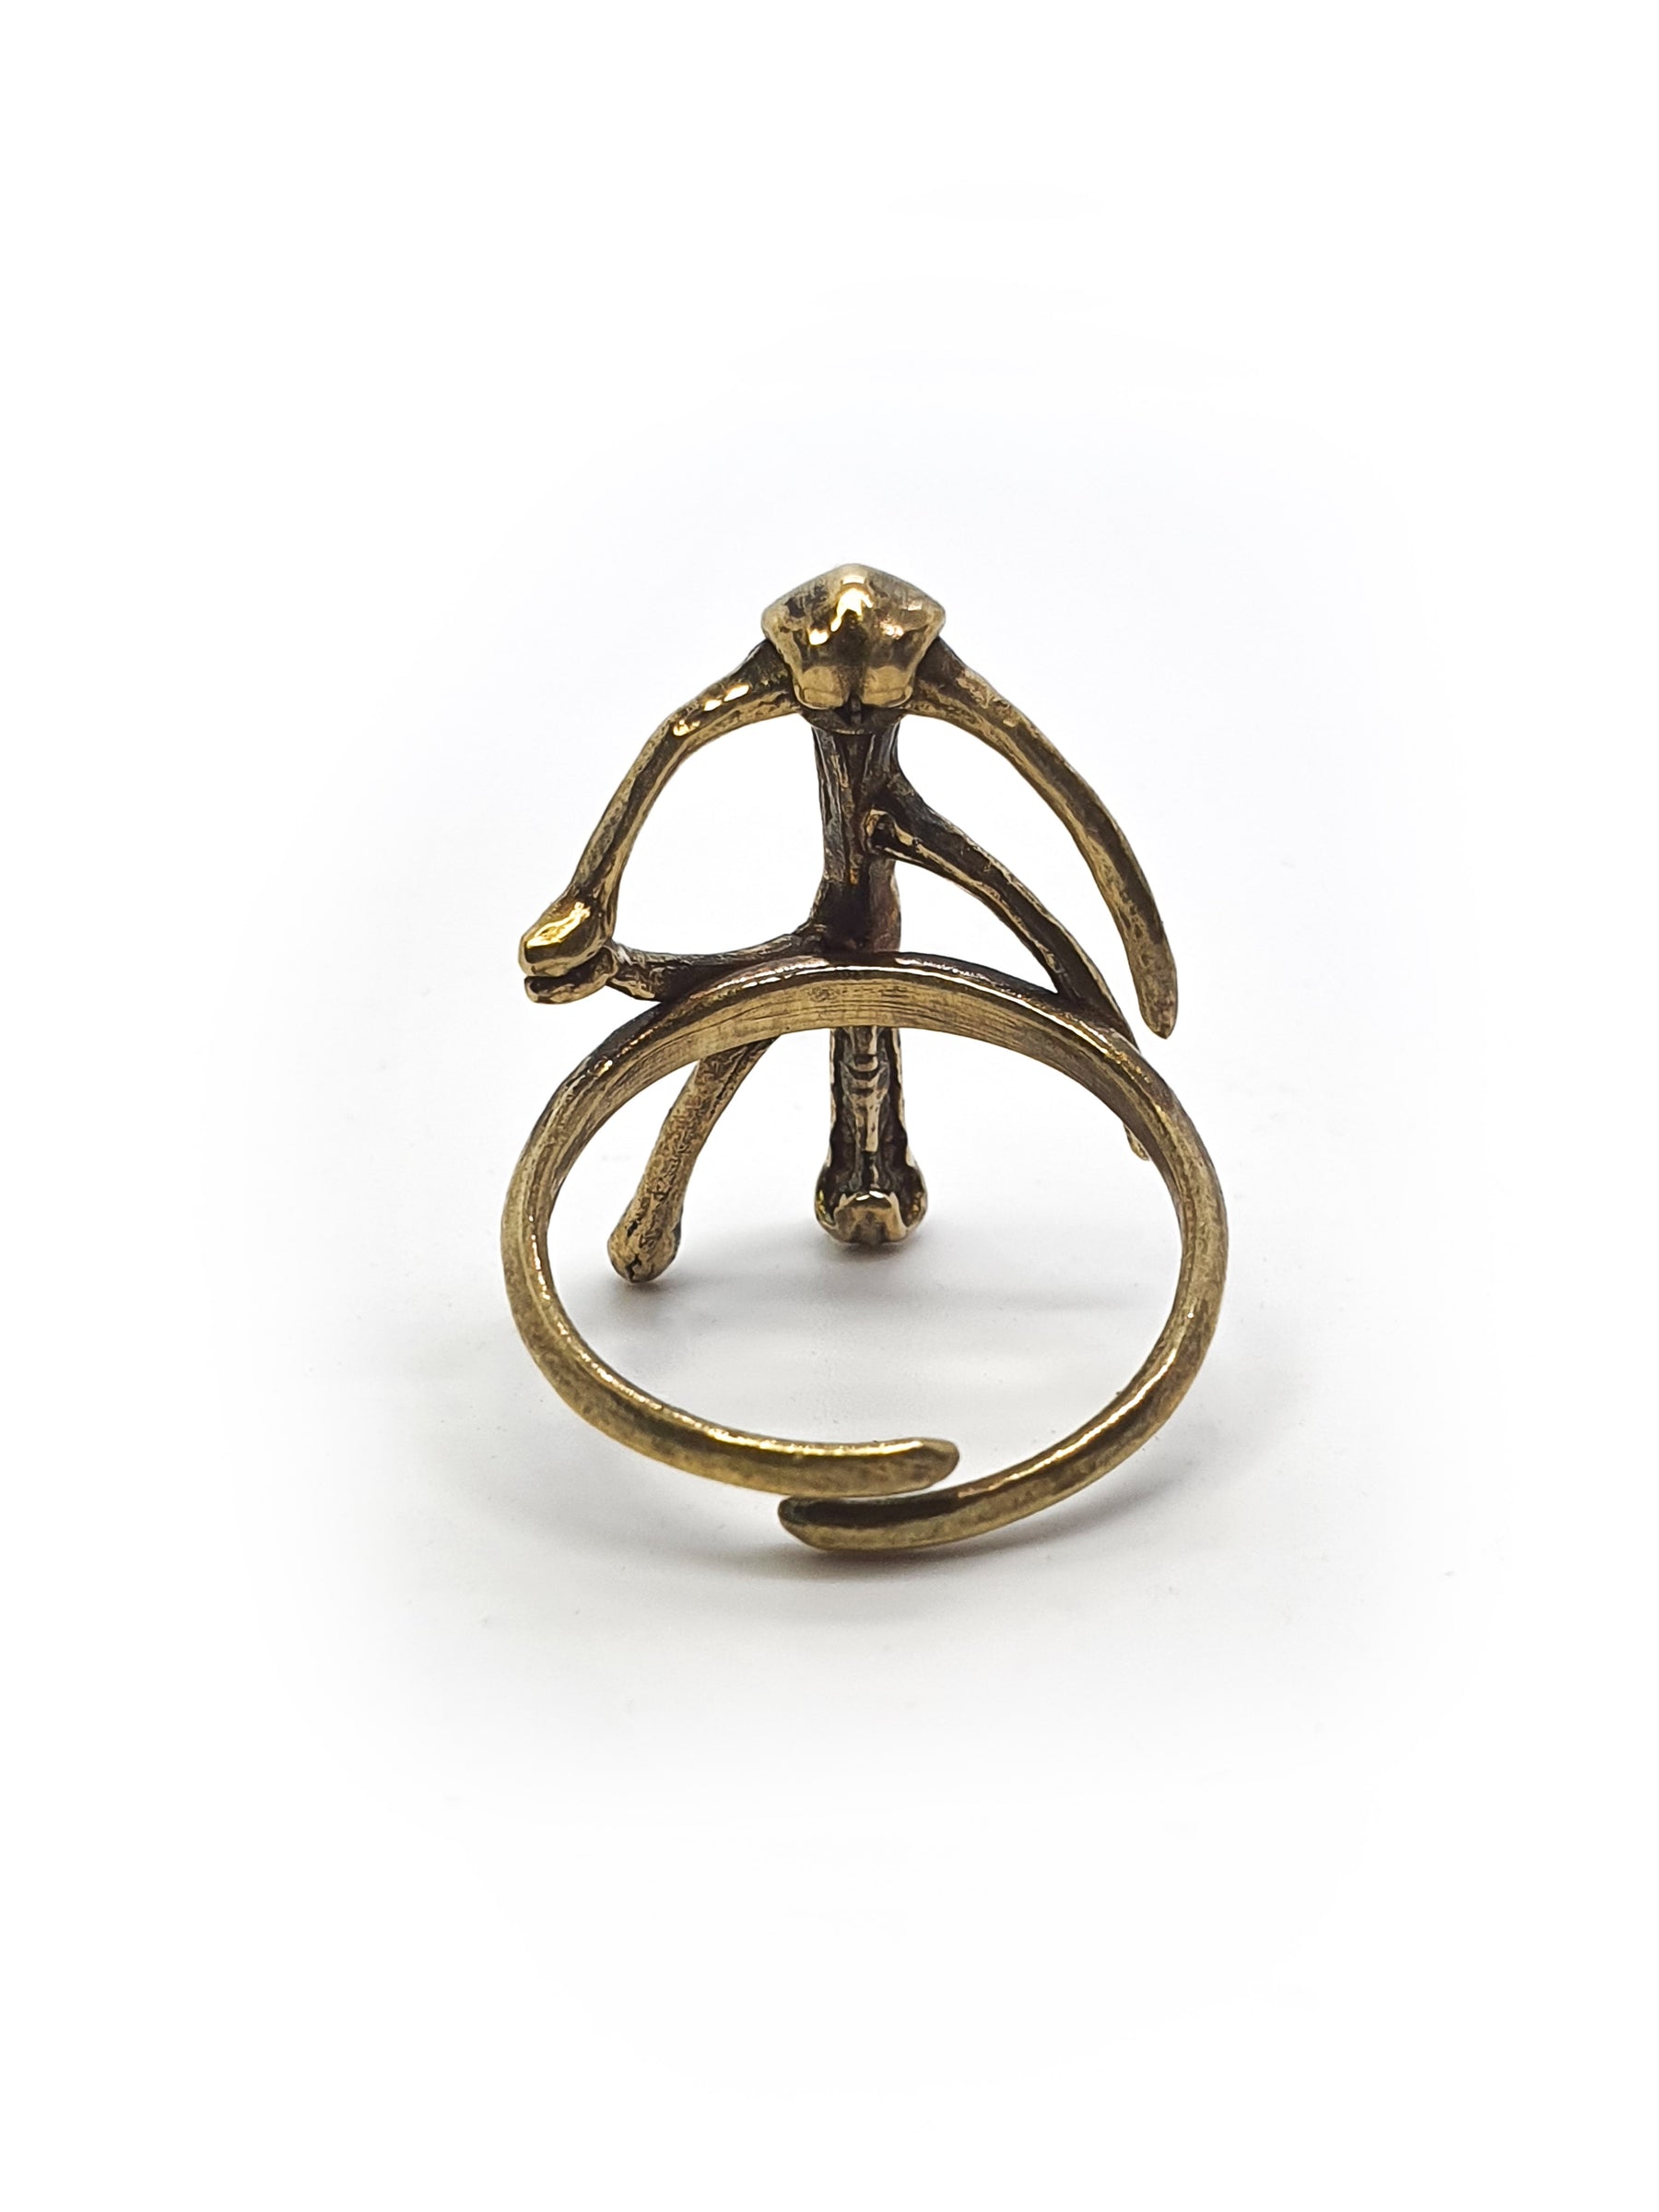 Rune Ring | Viking ENERGY Bindrune Symbol